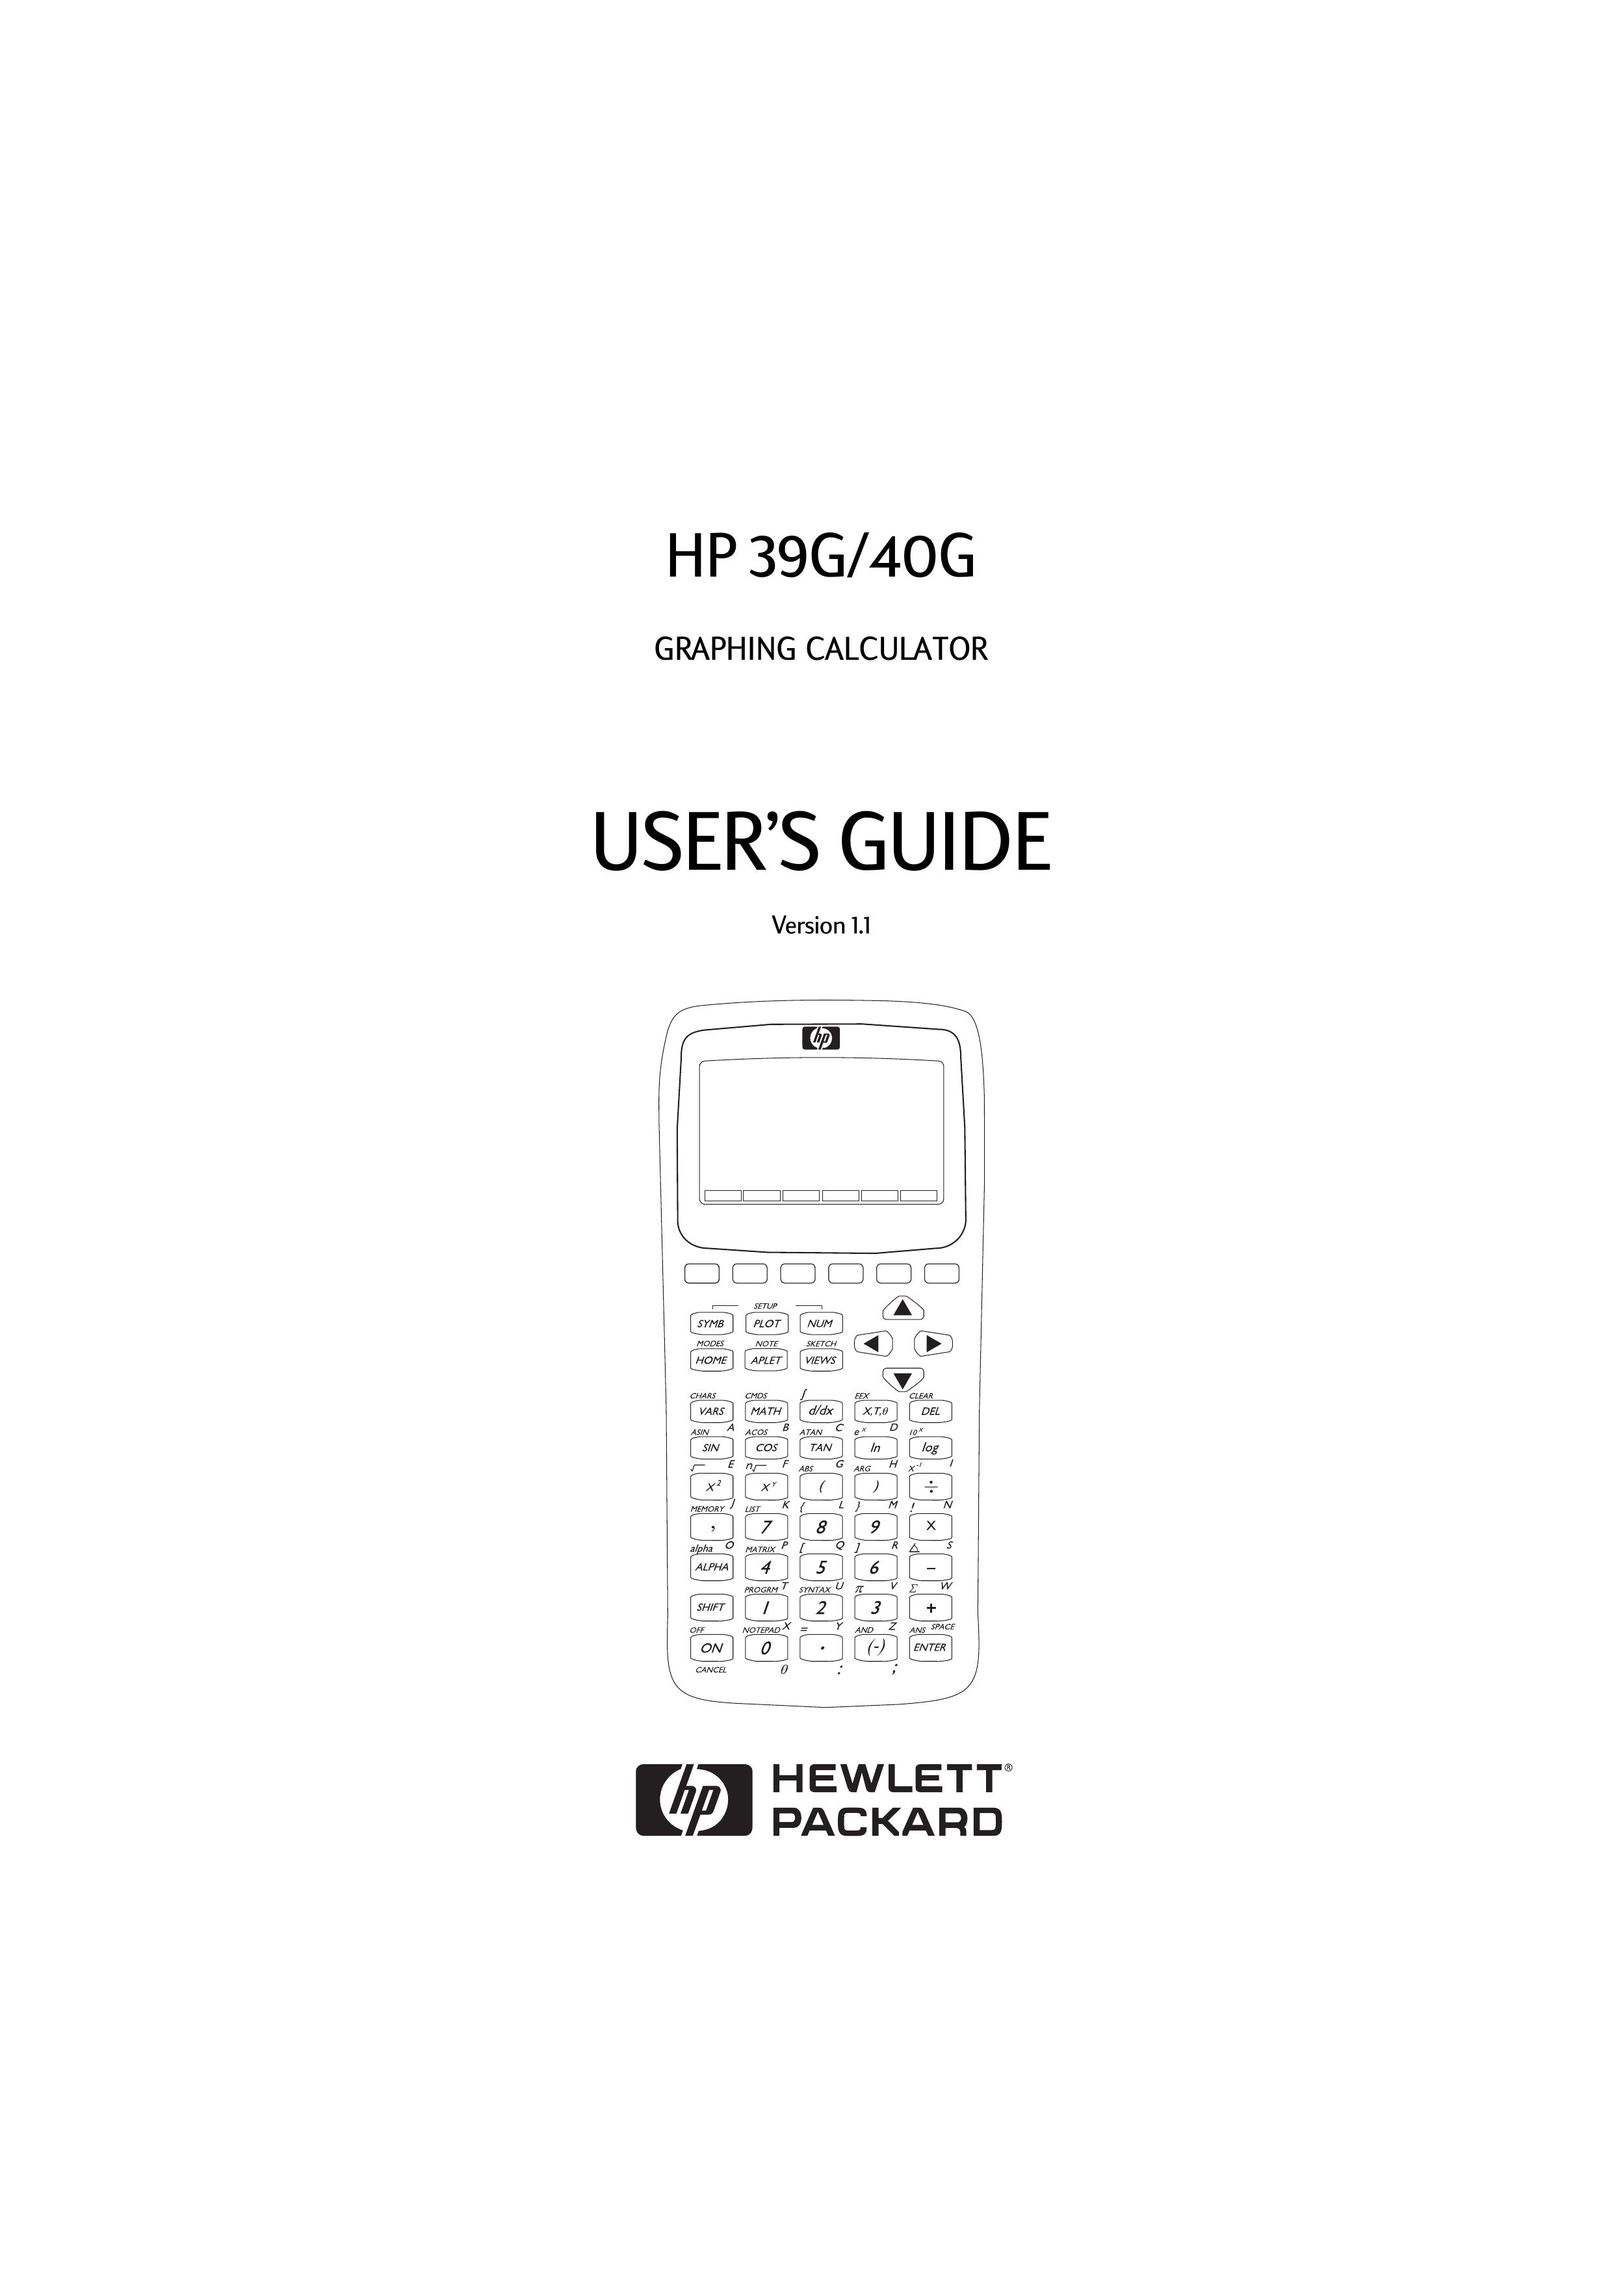 HP (Hewlett-Packard) 40G Calculator User Manual